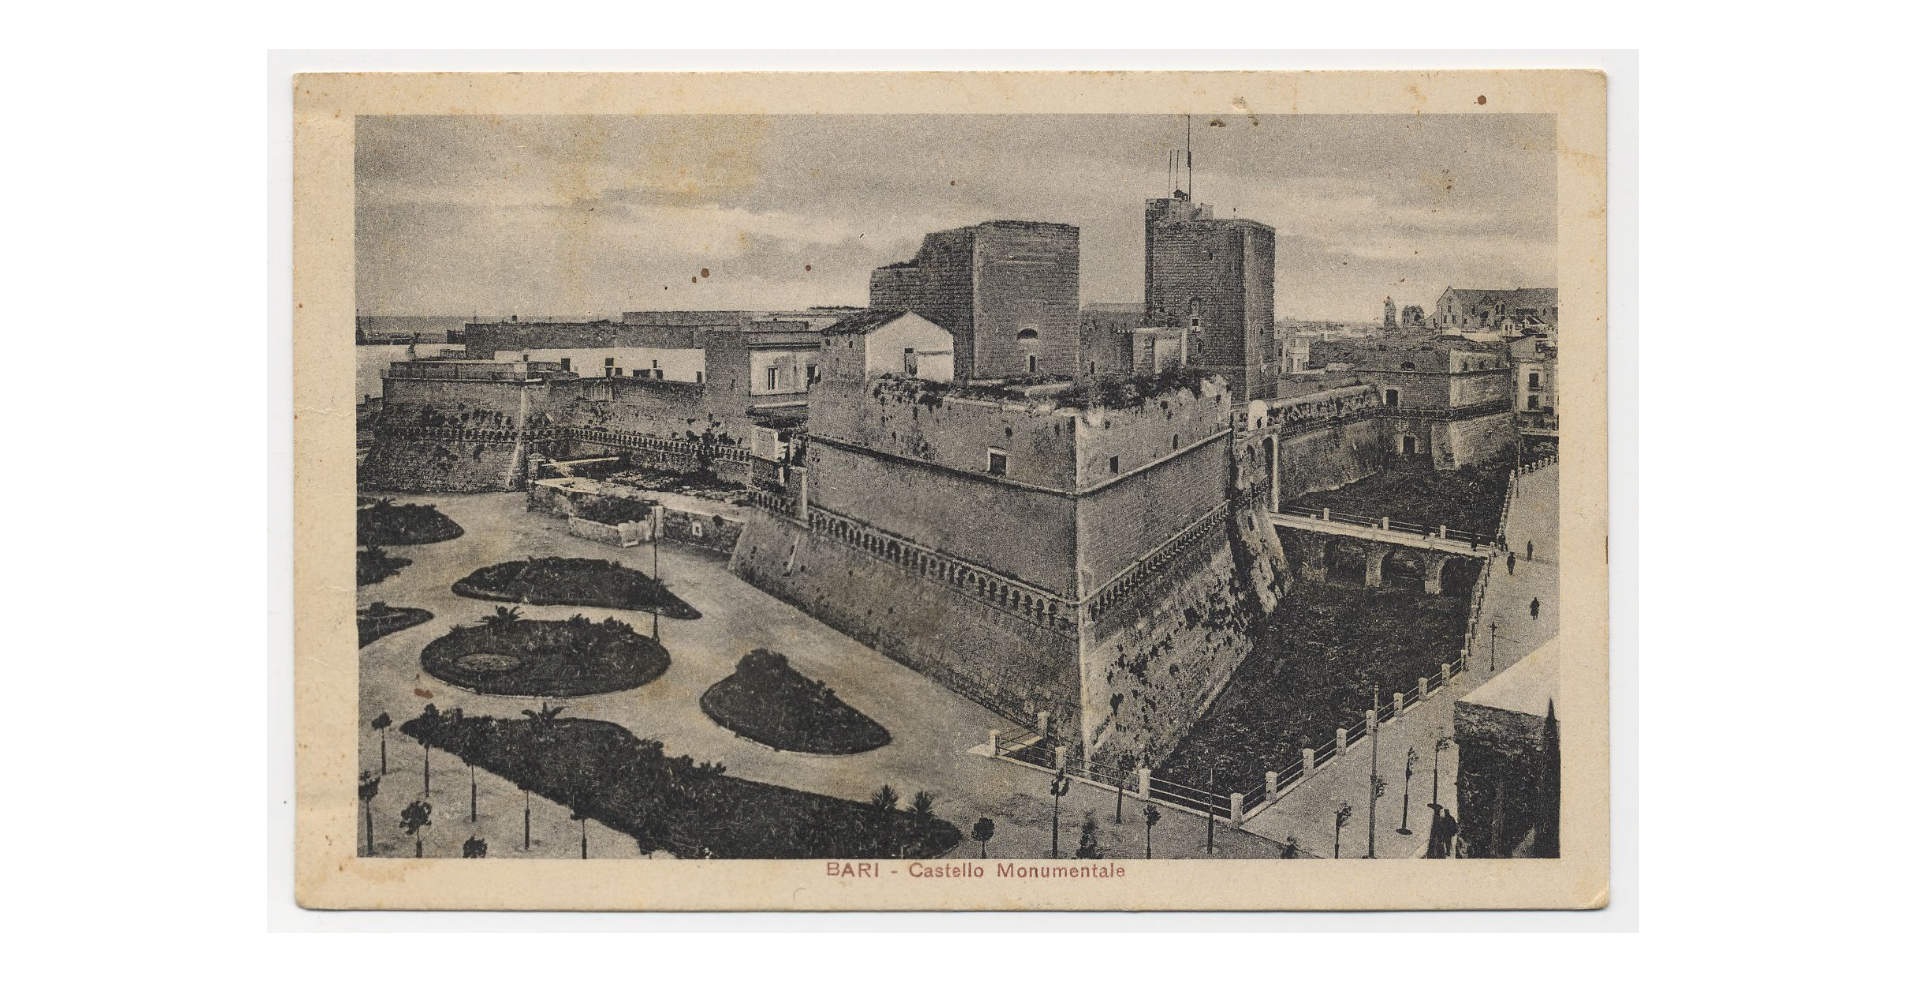 Fotografo non identificato, Bari - Castello monumentale, 1951-2000, cartolina, FFC018244